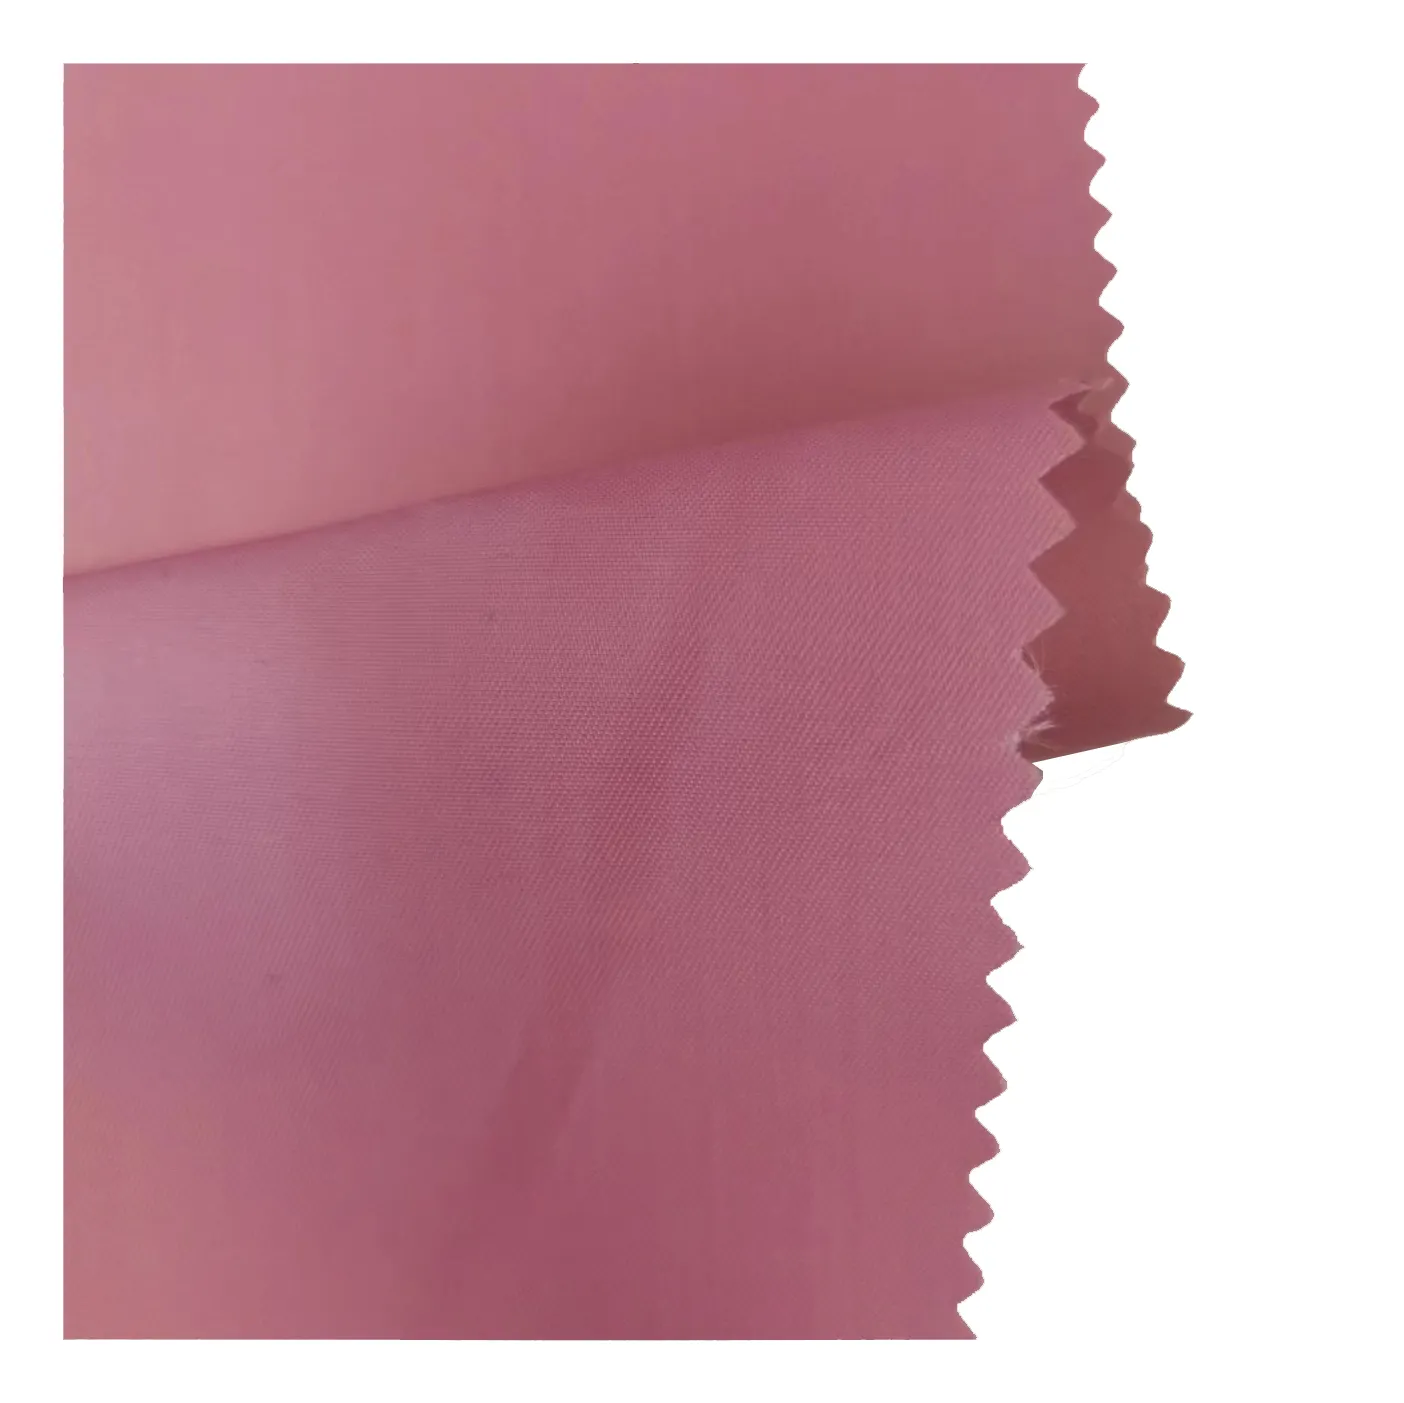 다운 재킷과 면 의류 안감 원단을 위한 핫 세일 하이 퀄리티 230T 핑크 회색 폴리 에스테르 태 피터